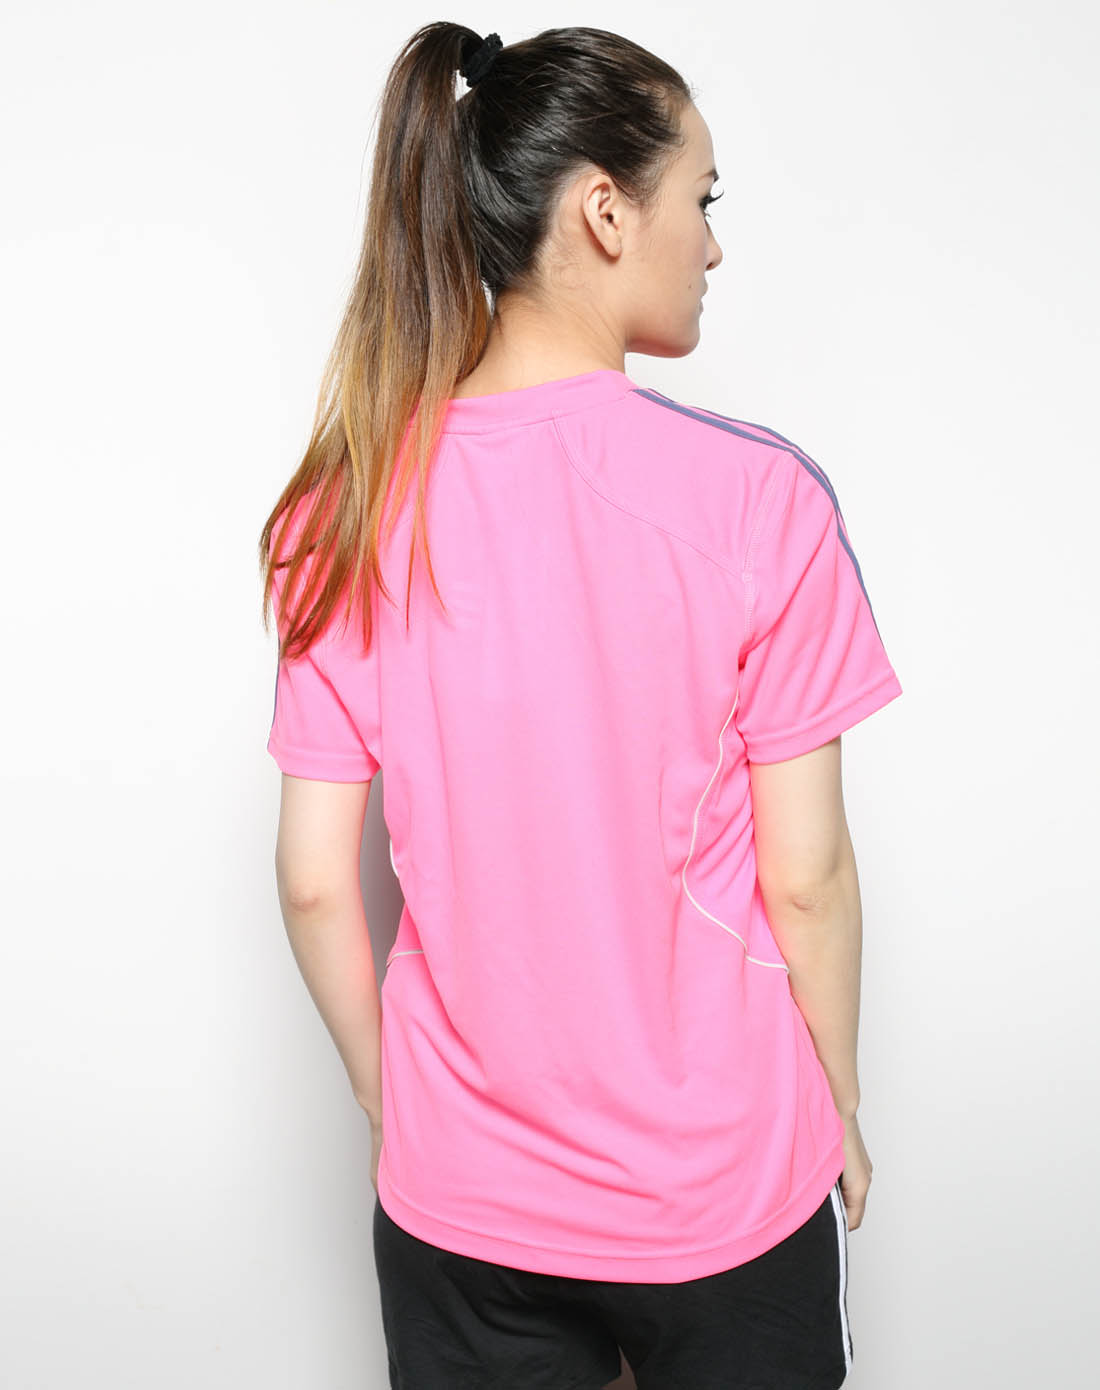 女子粉色短袖t恤